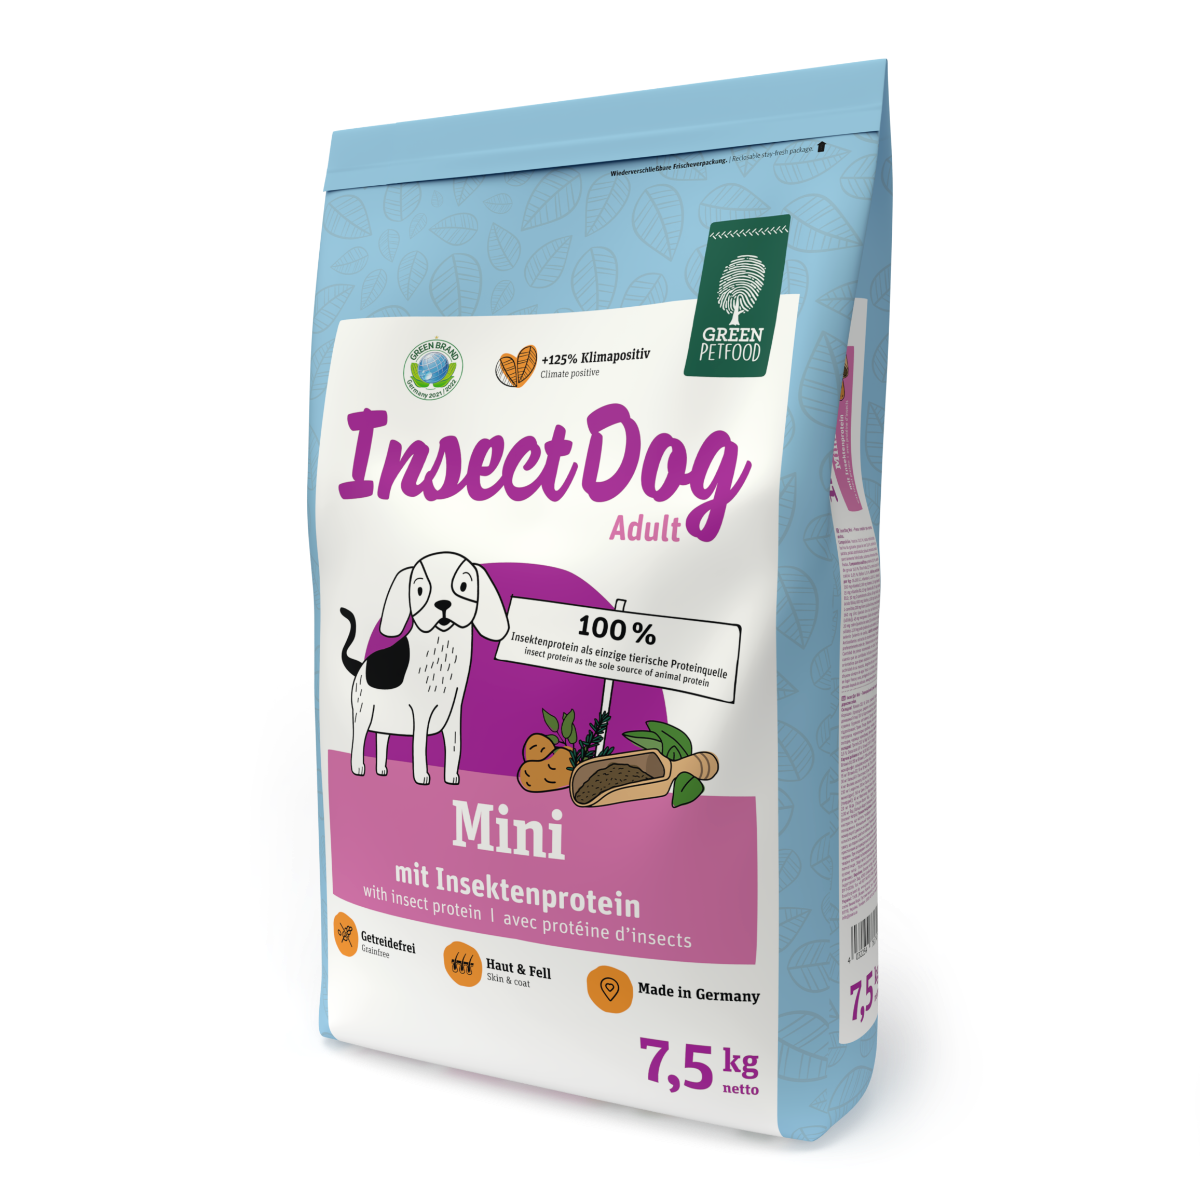 InsectDog Mini 7,5kg Green Petfood® von Green Petfood